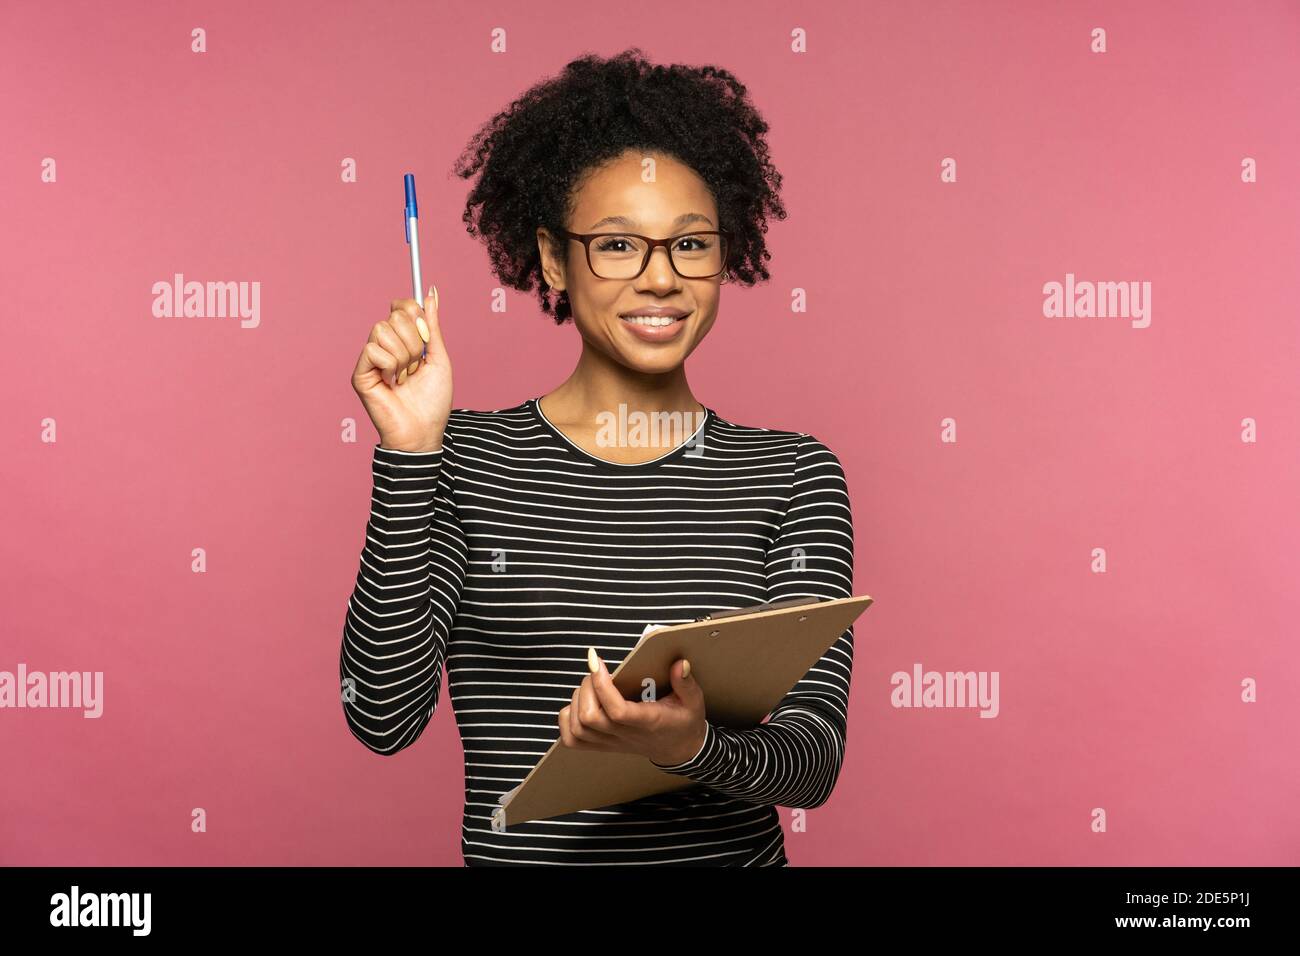 Junge glückliche afro-amerikanische Lehrerin Frau isoliert auf rosa Studio Wand. Student Mädchen tragen Brille halten Ordner und Stift, lächelnd, Blick auf die Kamera. Ed Stockfoto